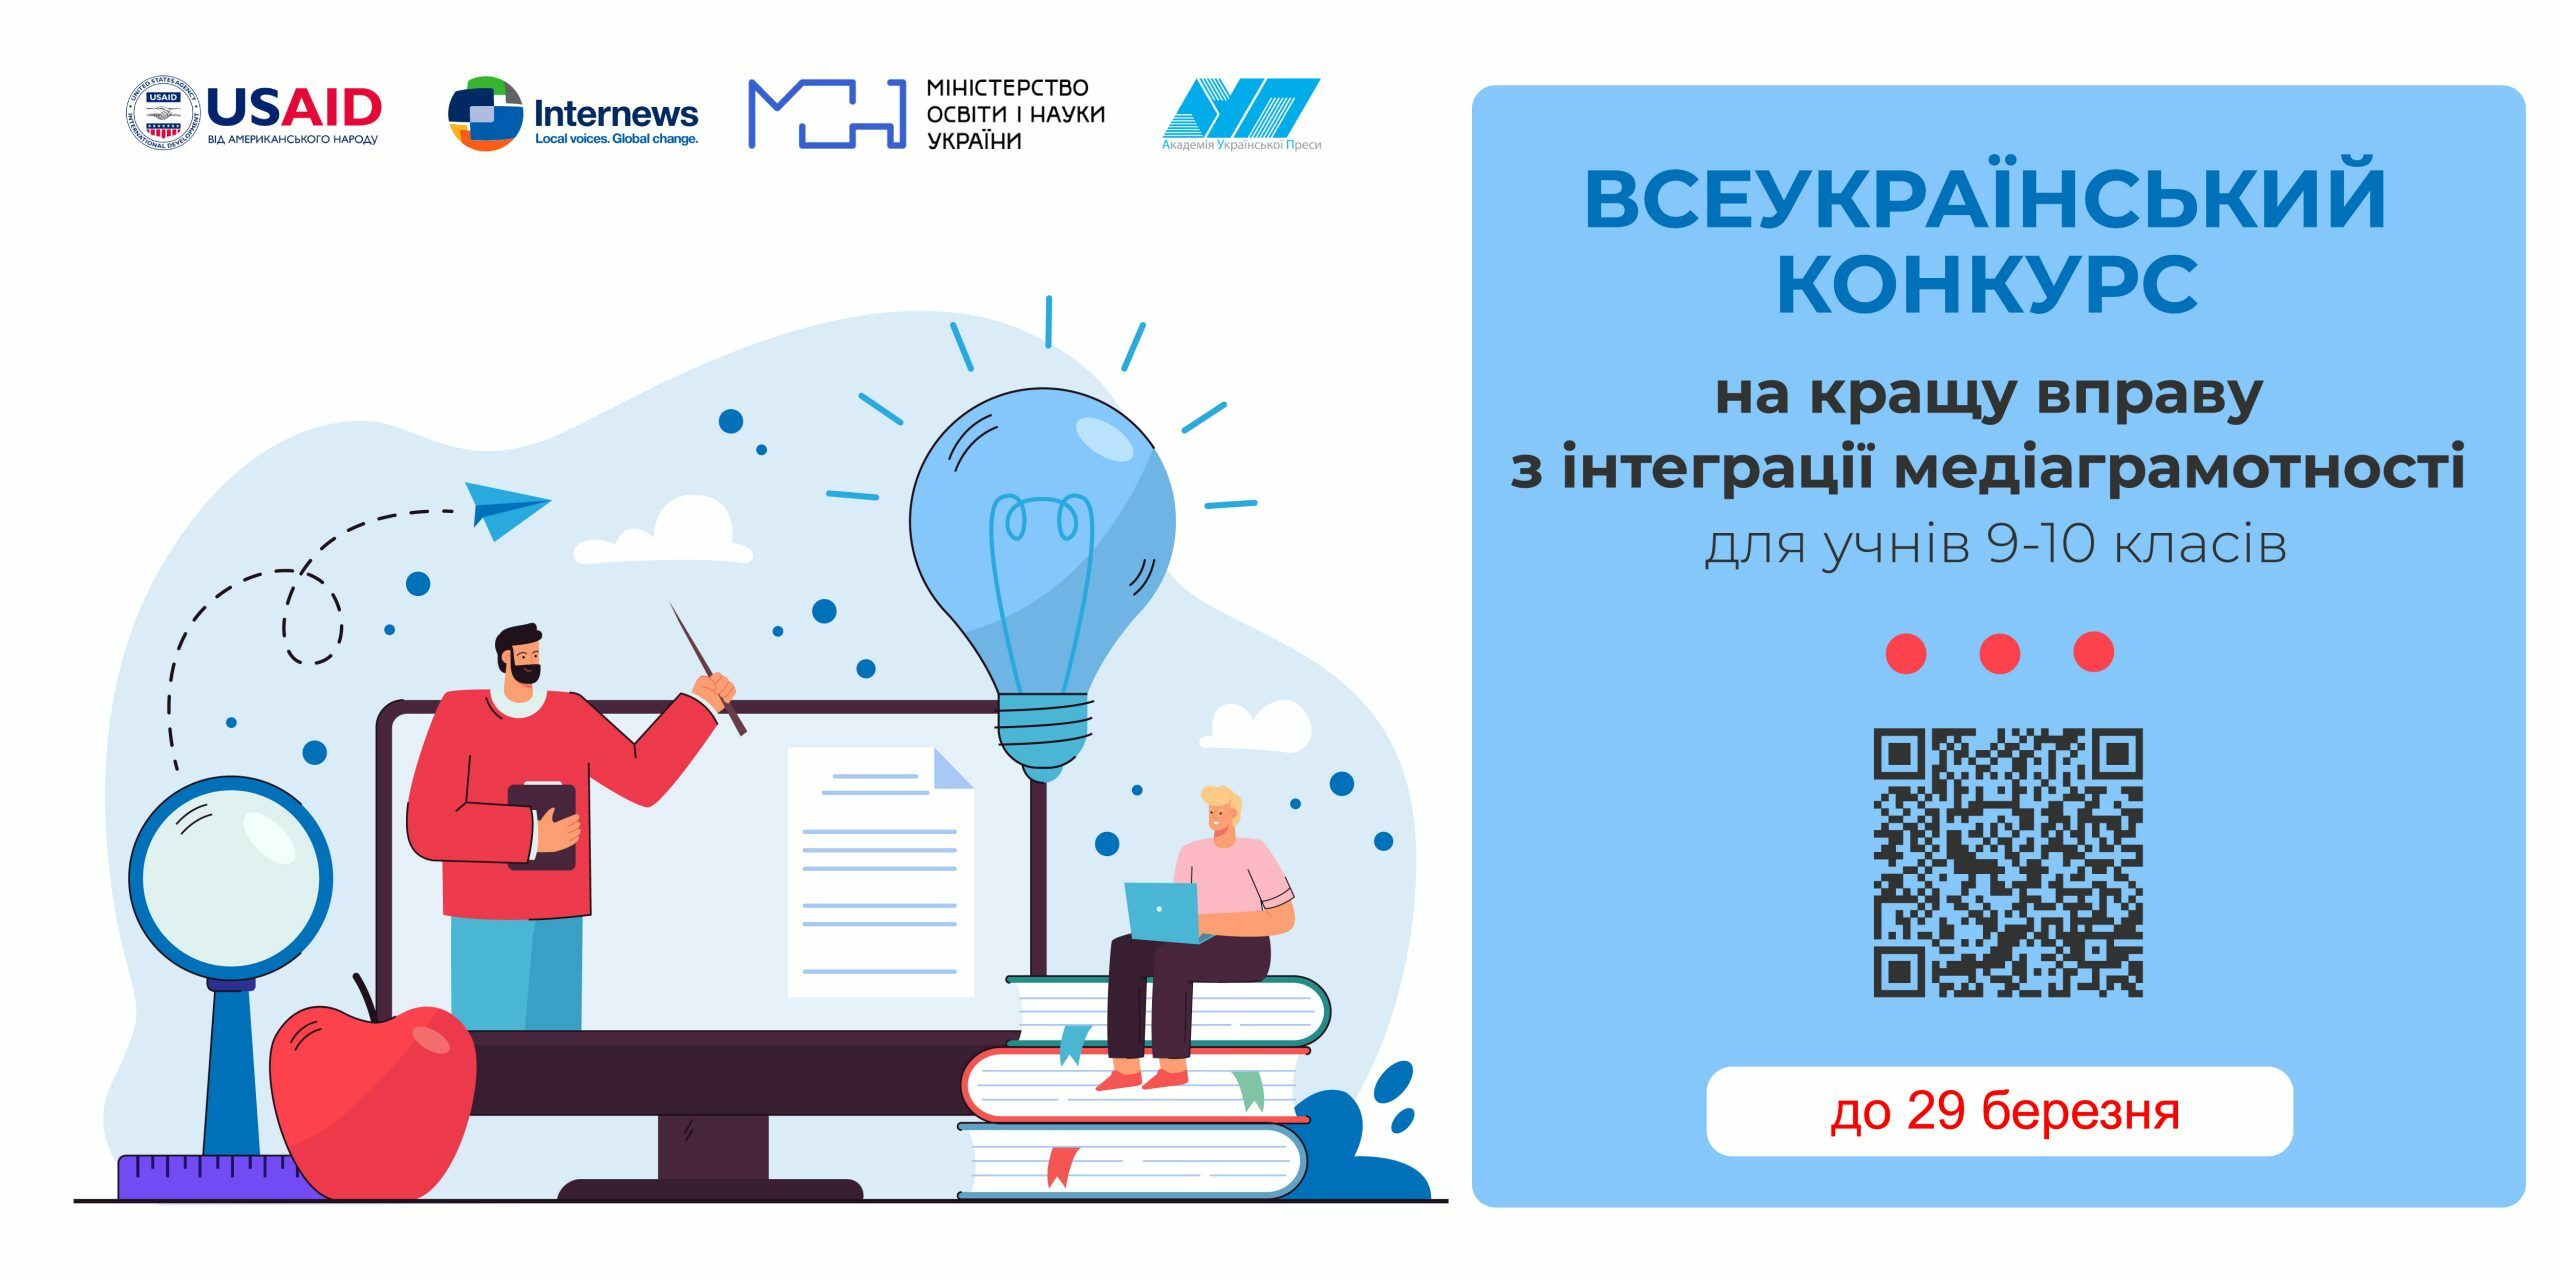 Konkurs-vprav-2023_Montazhnaya-oblast-1-scaled